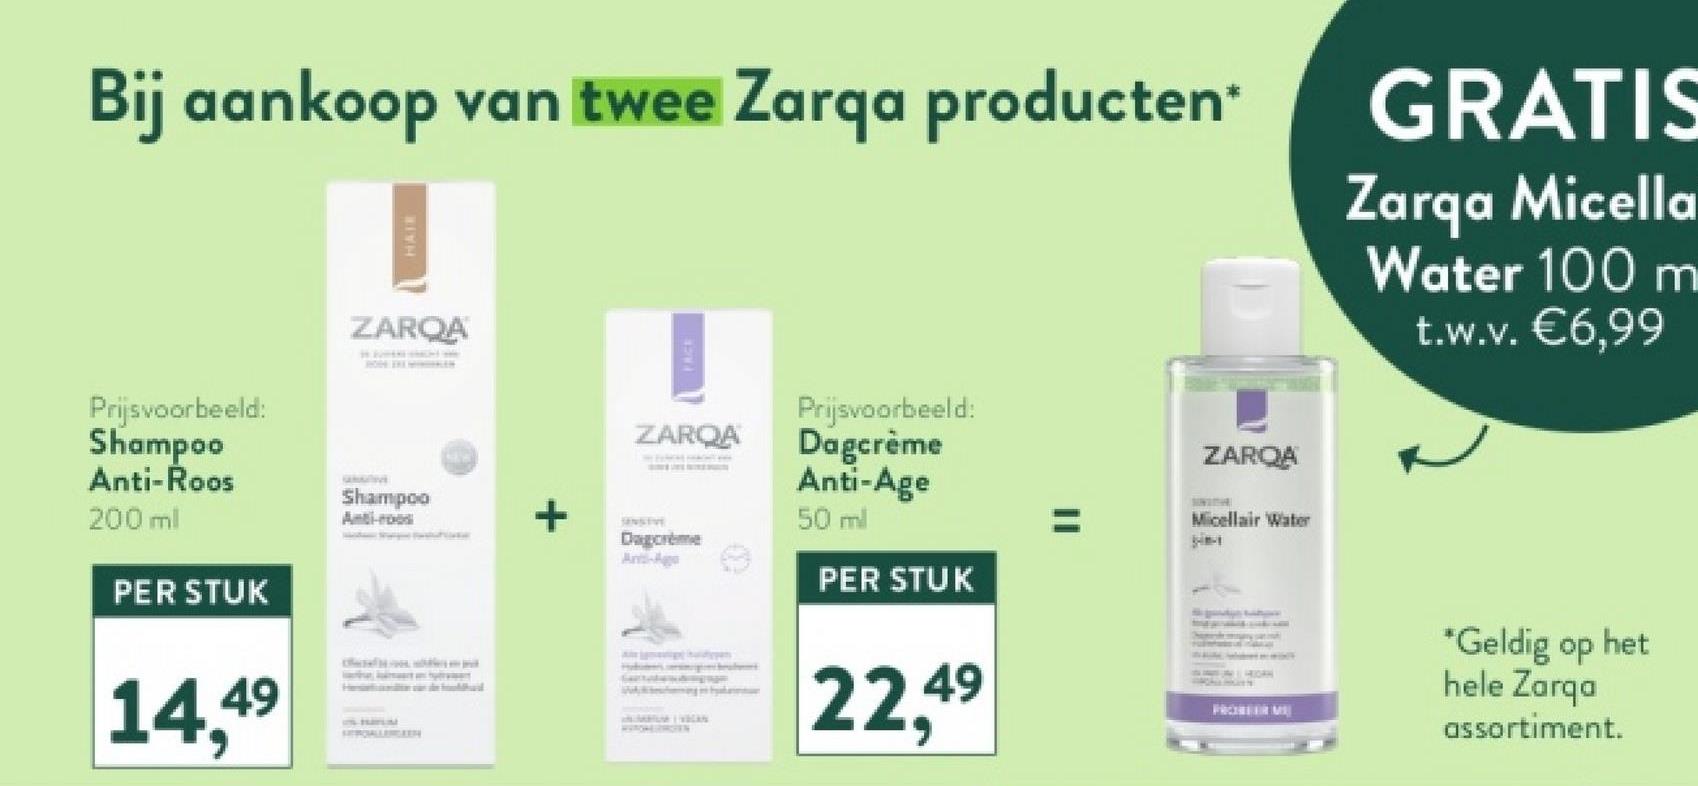 Bij aankoop van twee Zarqa producten*
HAIR
GRATIS
Zarqa Micella
Water 100 m
t.w.v. €6,99
Prijsvoorbeeld:
Shampoo
Anti-Roos
200 ml
PER STUK
ZARQA
Shampoo
Anti-roo
14,49
HEROALLERGEEN
+
ZARQA
Dagcrème
Anti-Ago
Prijsvoorbeeld:
Dagcrème
Anti-Age
50 ml
PER STUK
ZARQA
Micellair Water
Wang en byakarta
22,49
HIGH
FRONTER ME
*Geldig op het
hele Zarqa
assortiment.